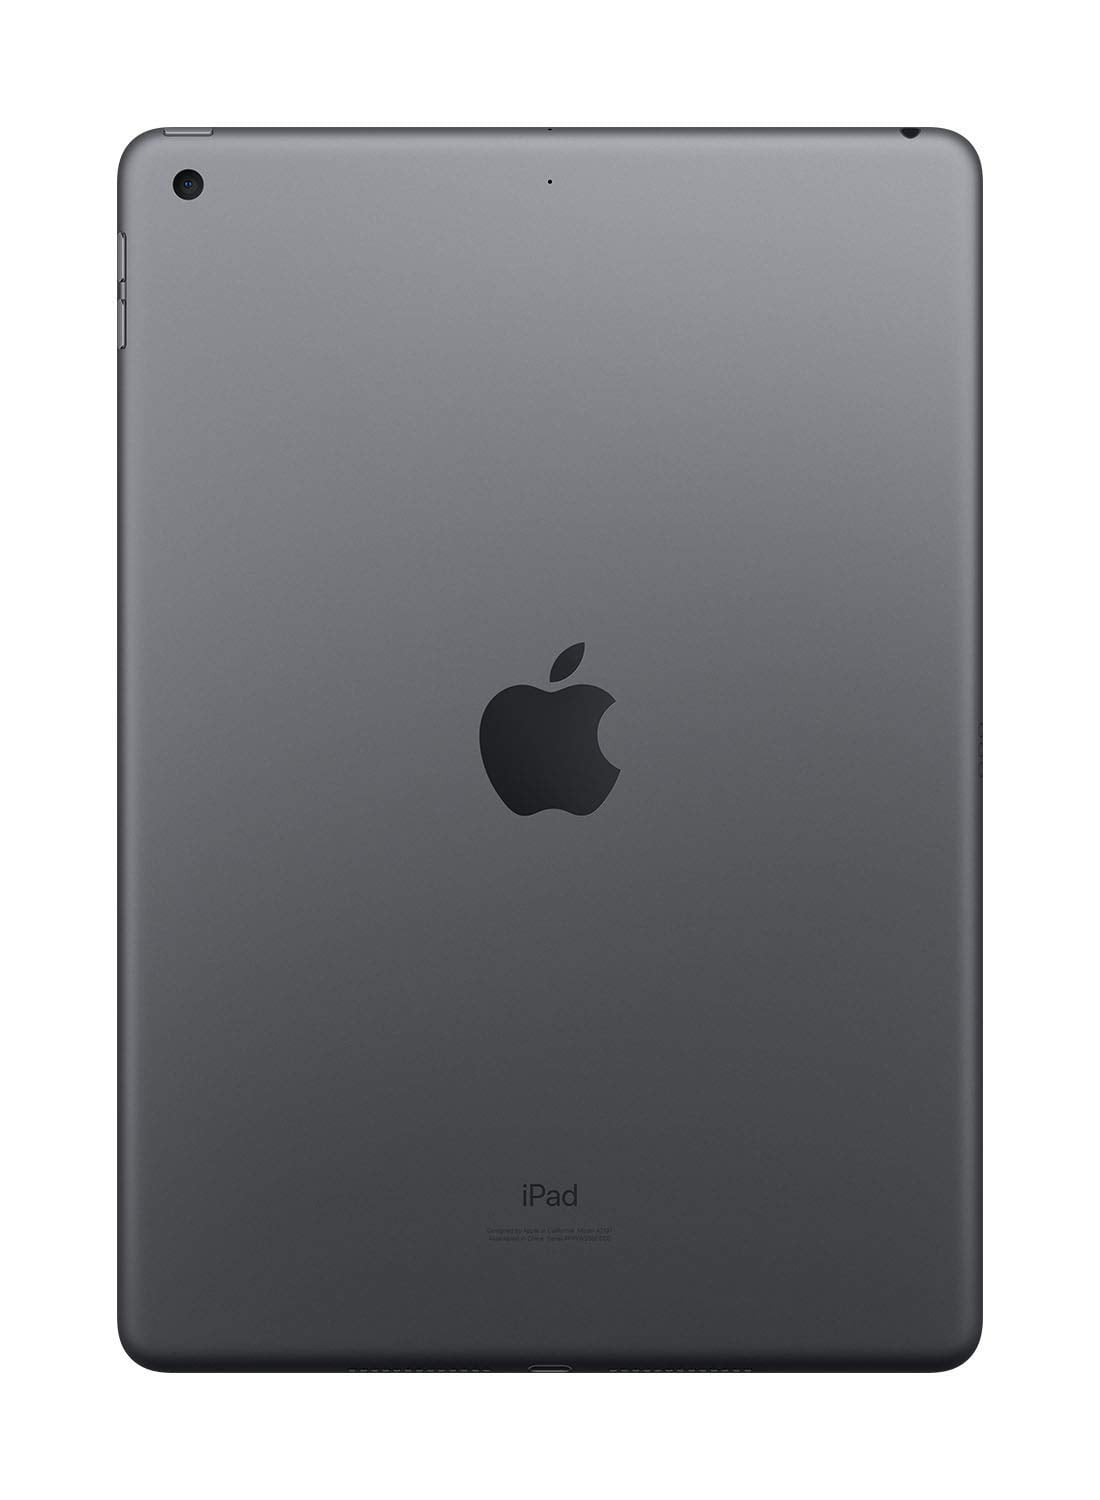 商品詳細wi-fi Apple iPad7 32GB グレー